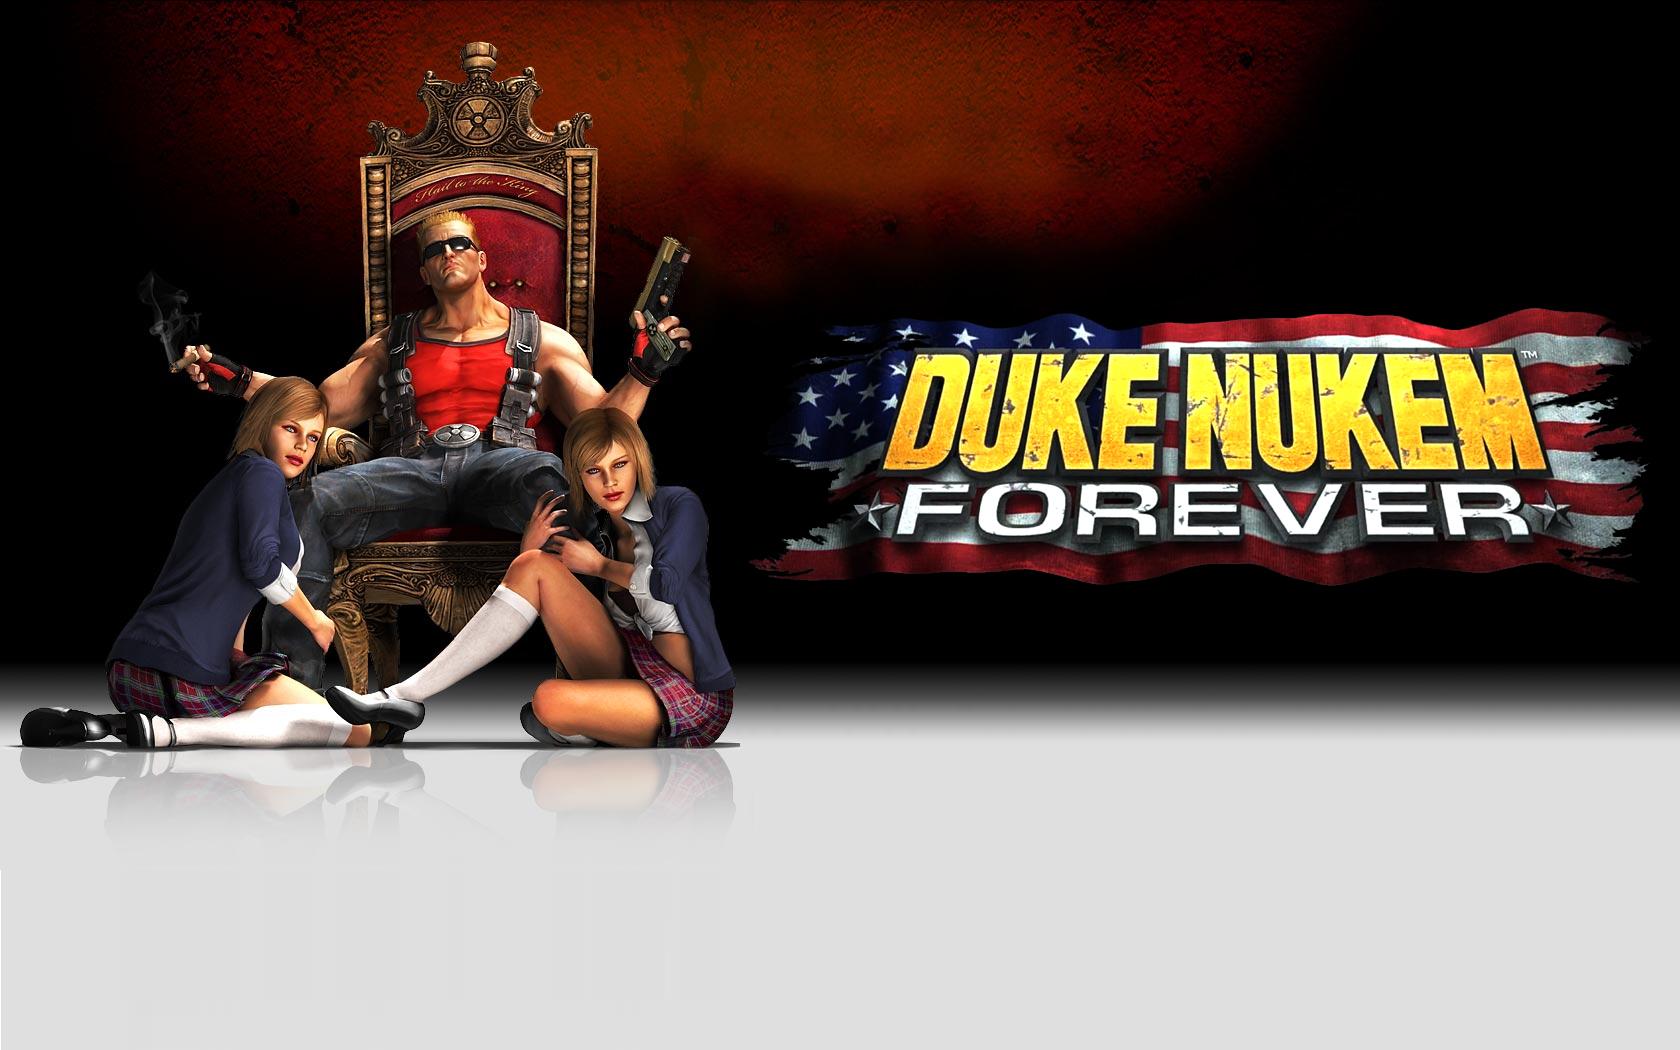 Duke Nukem Forever Backgrounds on Wallpapers Vista